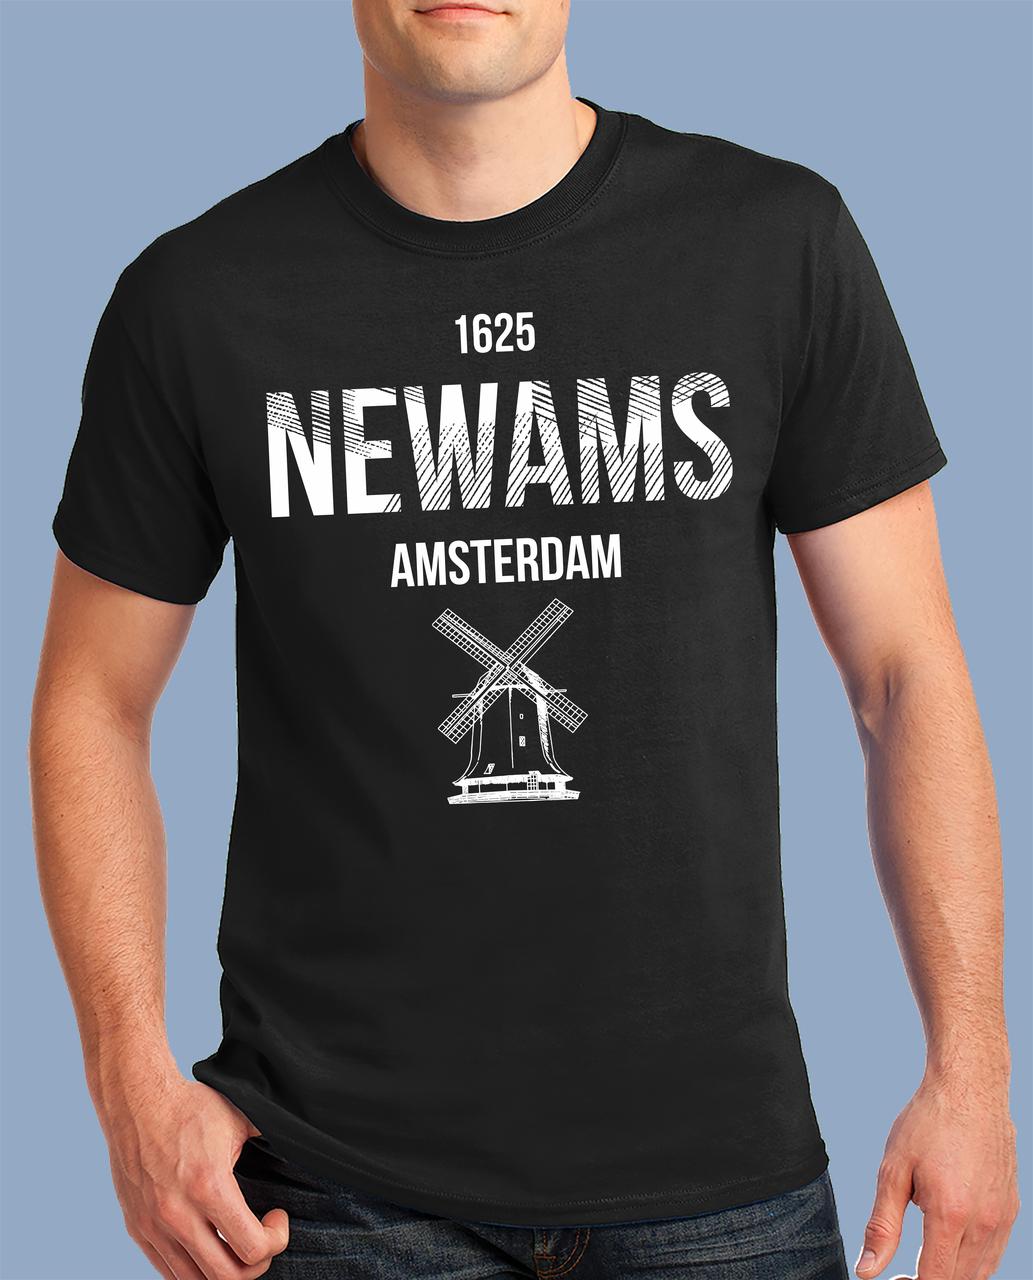 

Модная летняя футболка со стильной картинкой NEWAMS хлопковая мягкий дышащий принт! черная